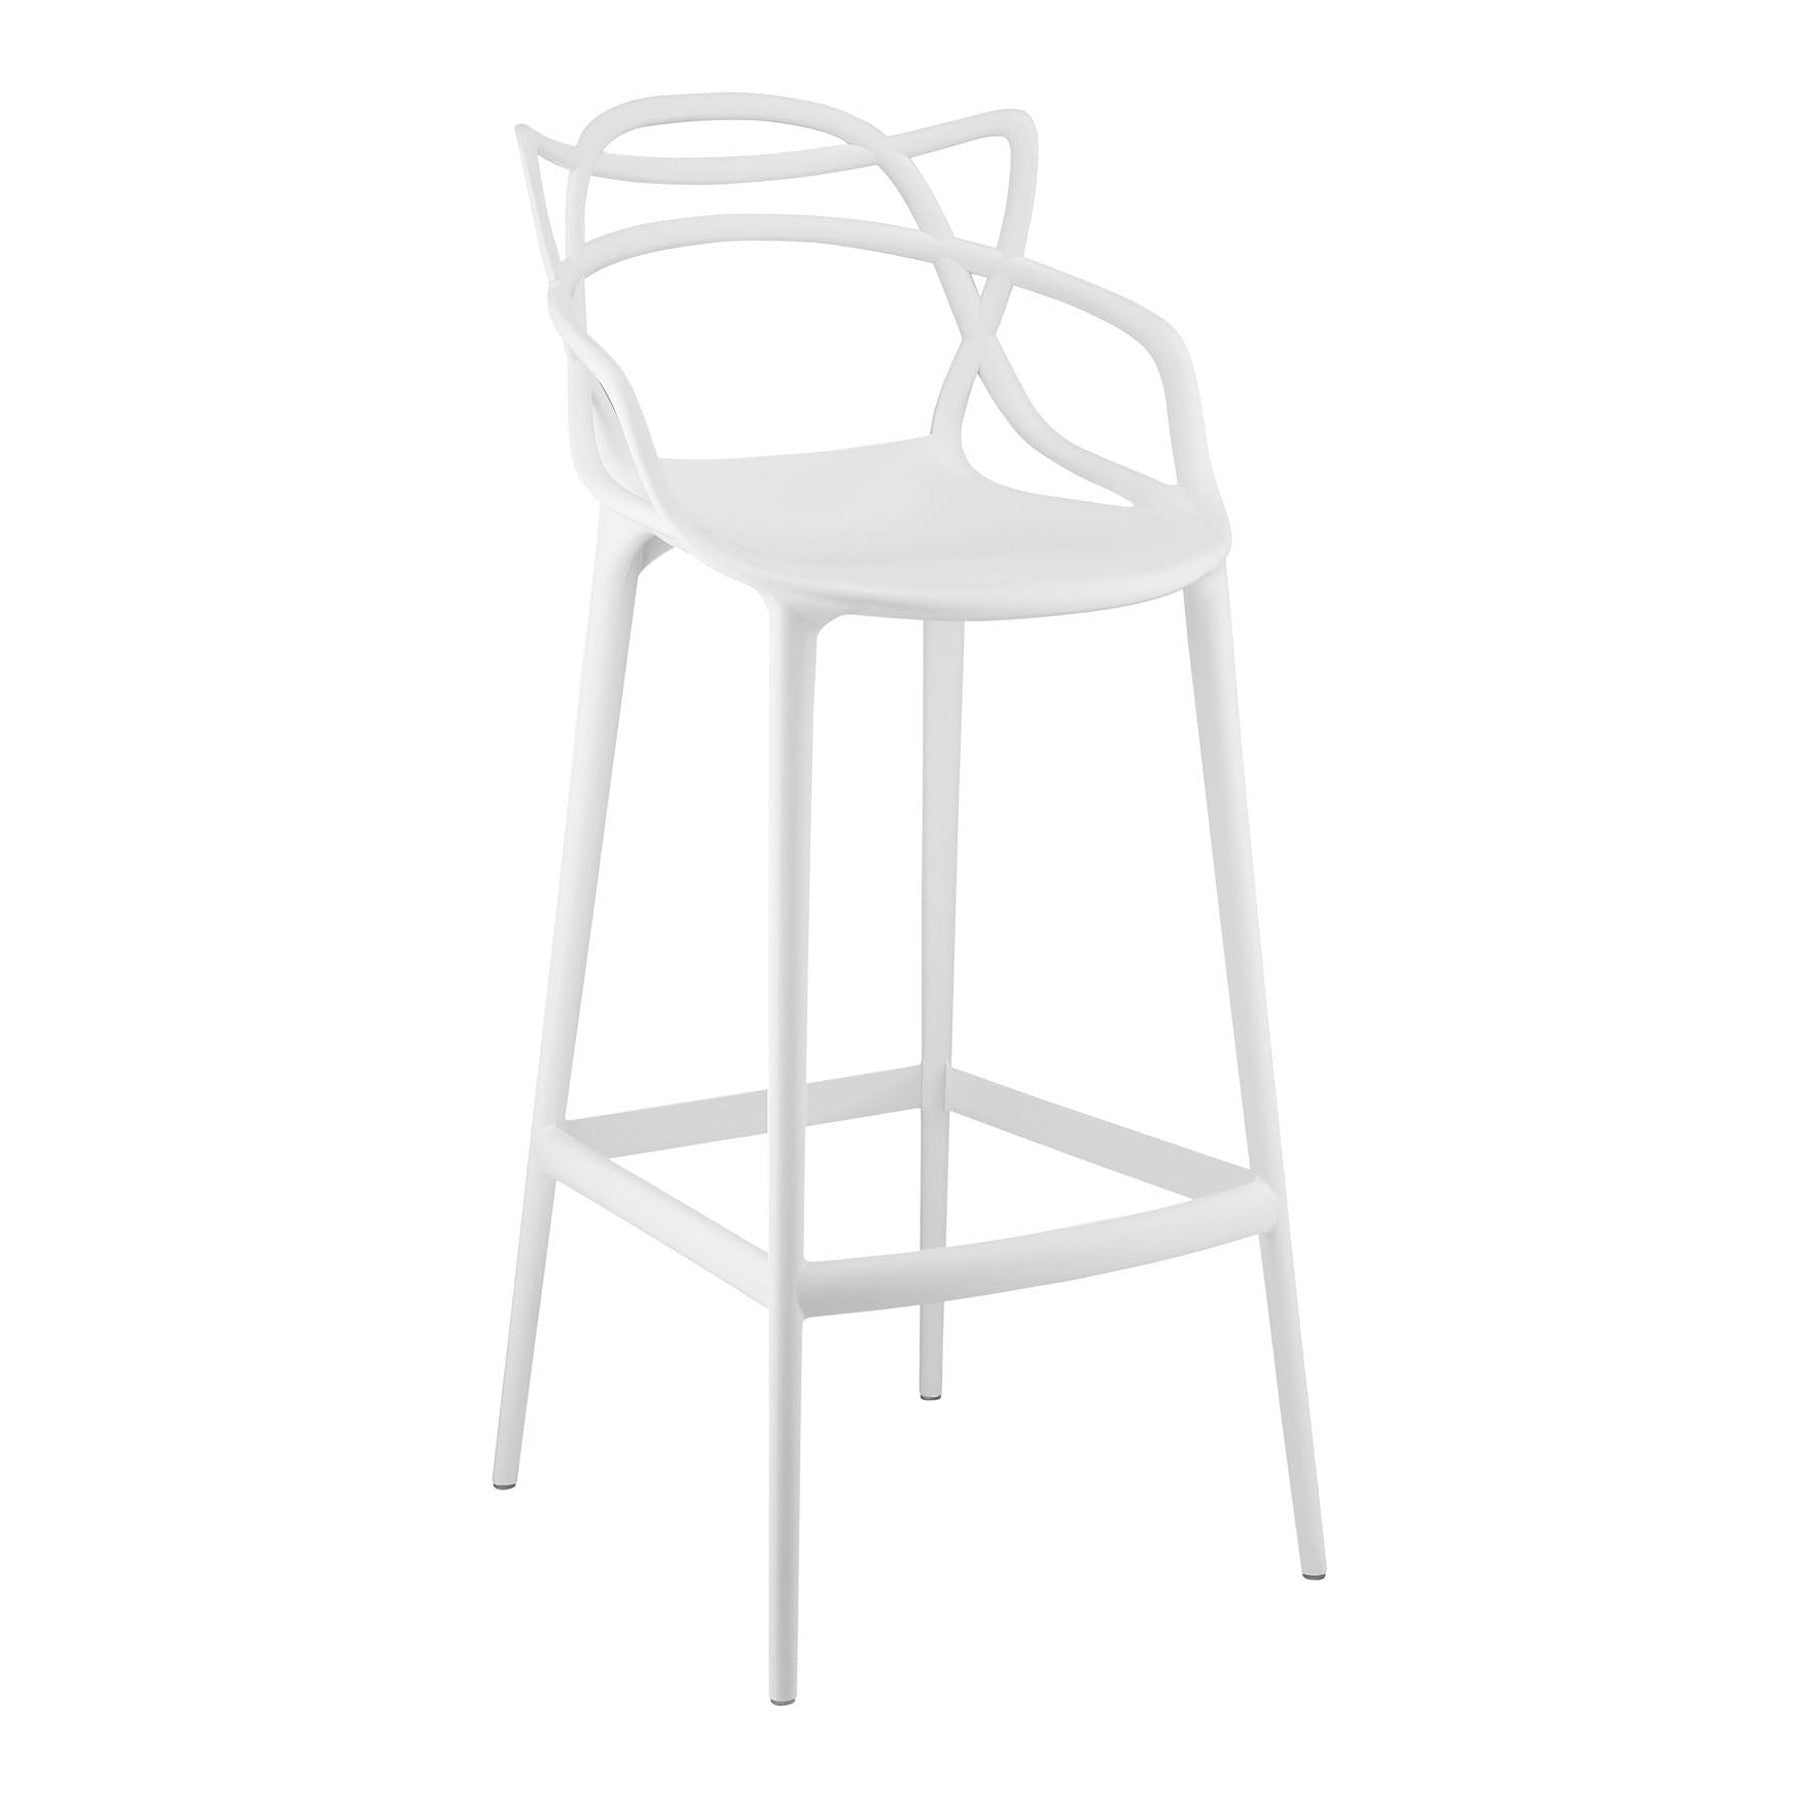 31" White Bar Chair